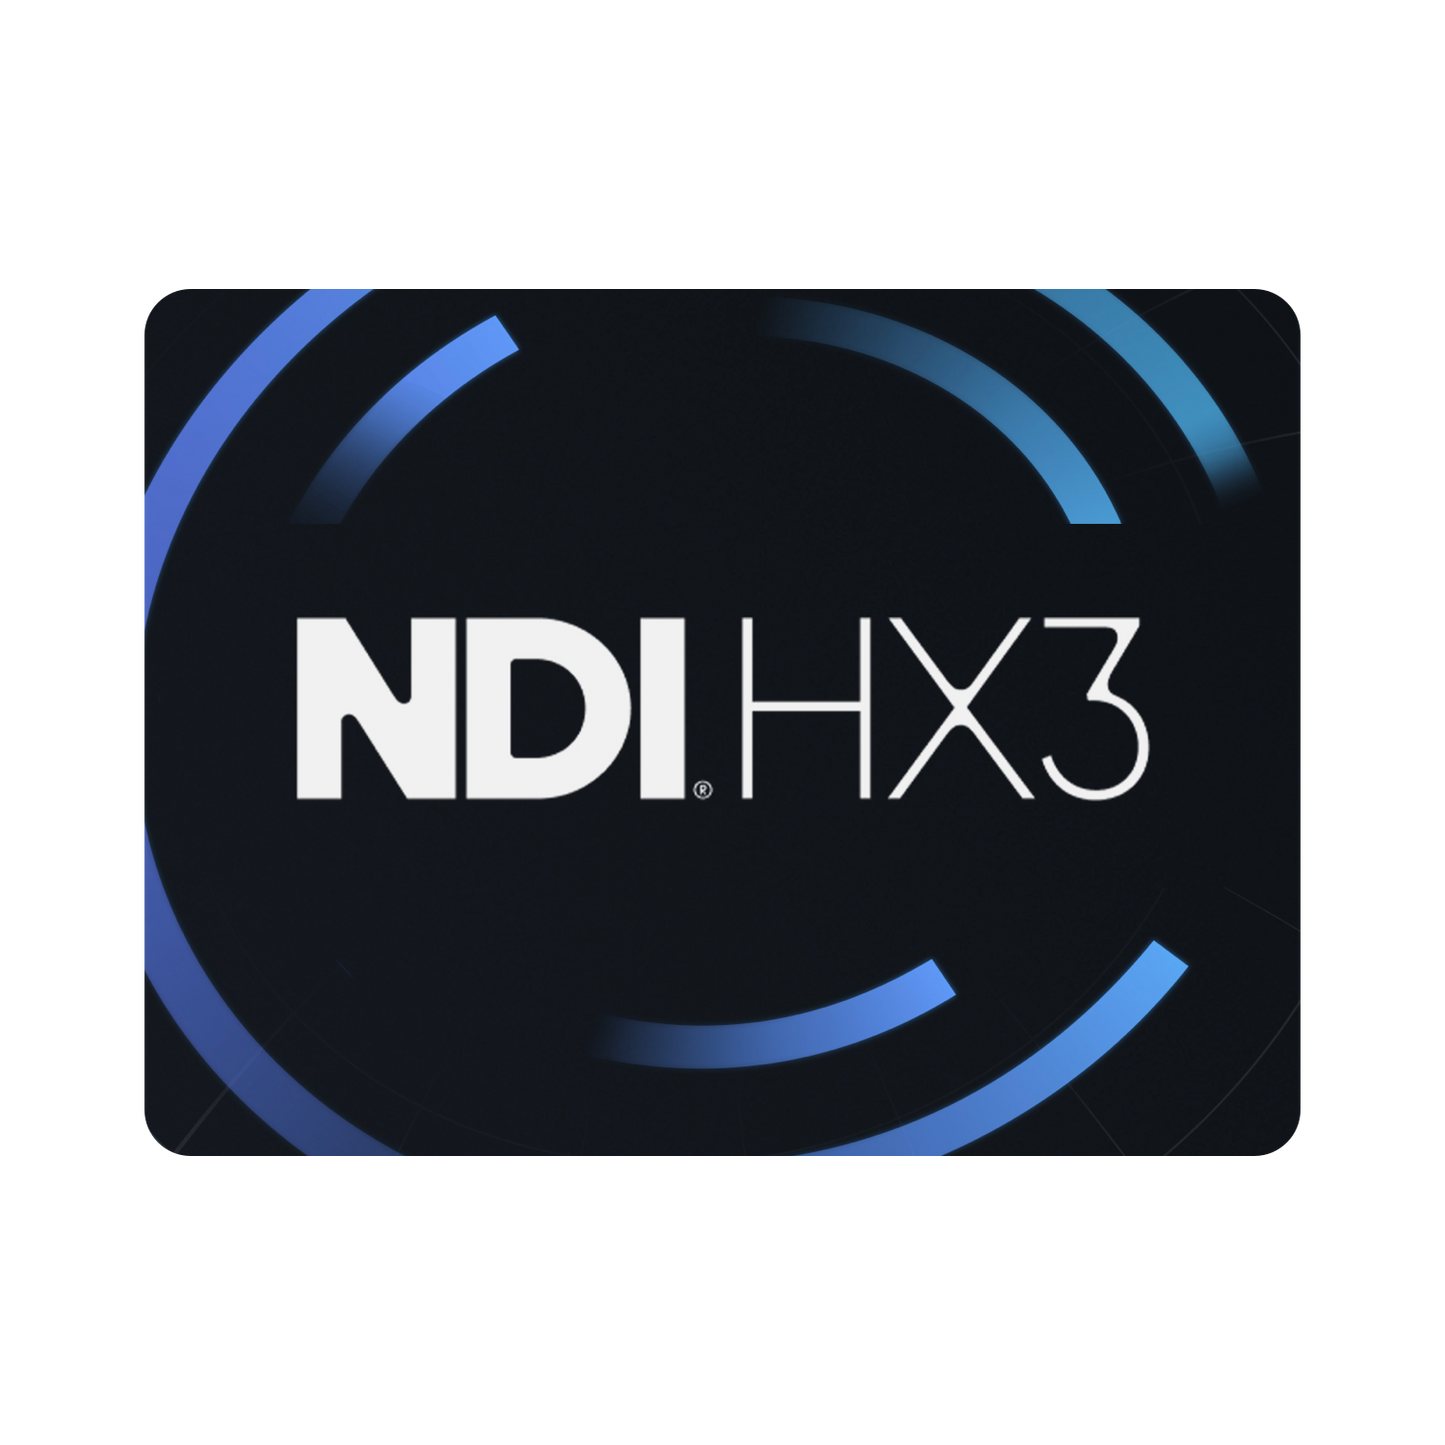 NDI HX3 註冊序號